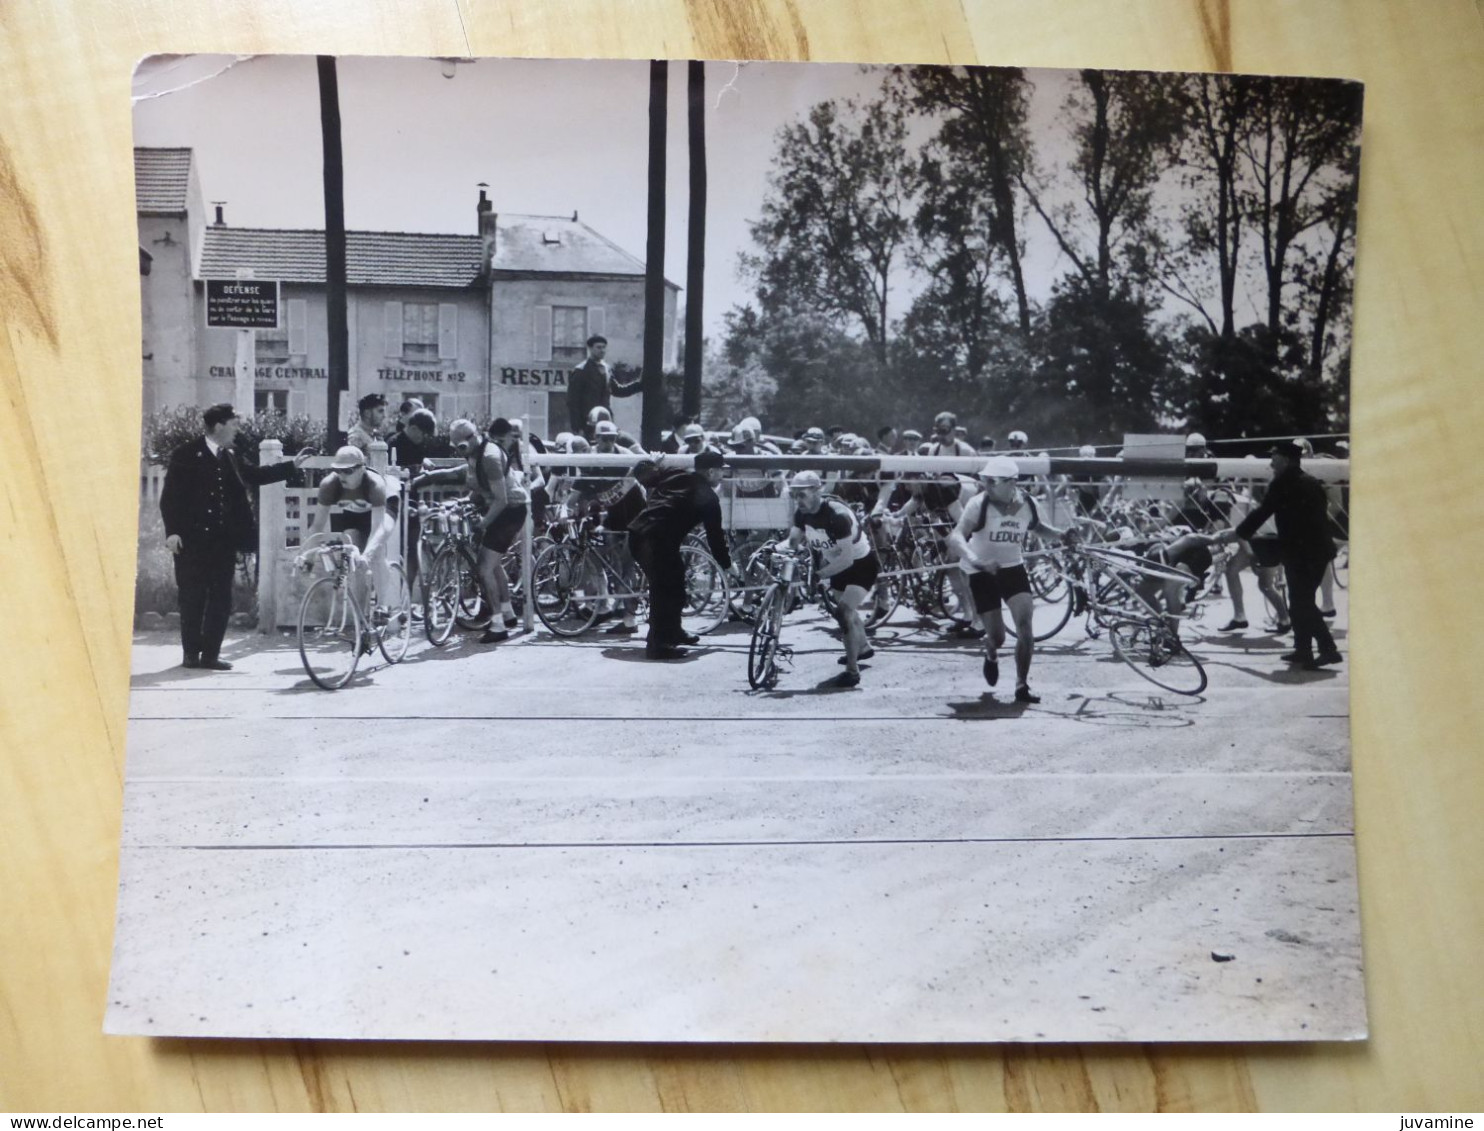 77 MARLES EN BRIE - LES COUREURS AU PASSAGE A NIVEAU DE LA GARE - CIRCUIT DE PARIS - PHOTOS 1937 CYCLISME CYCLISTE SPORT - Cyclisme